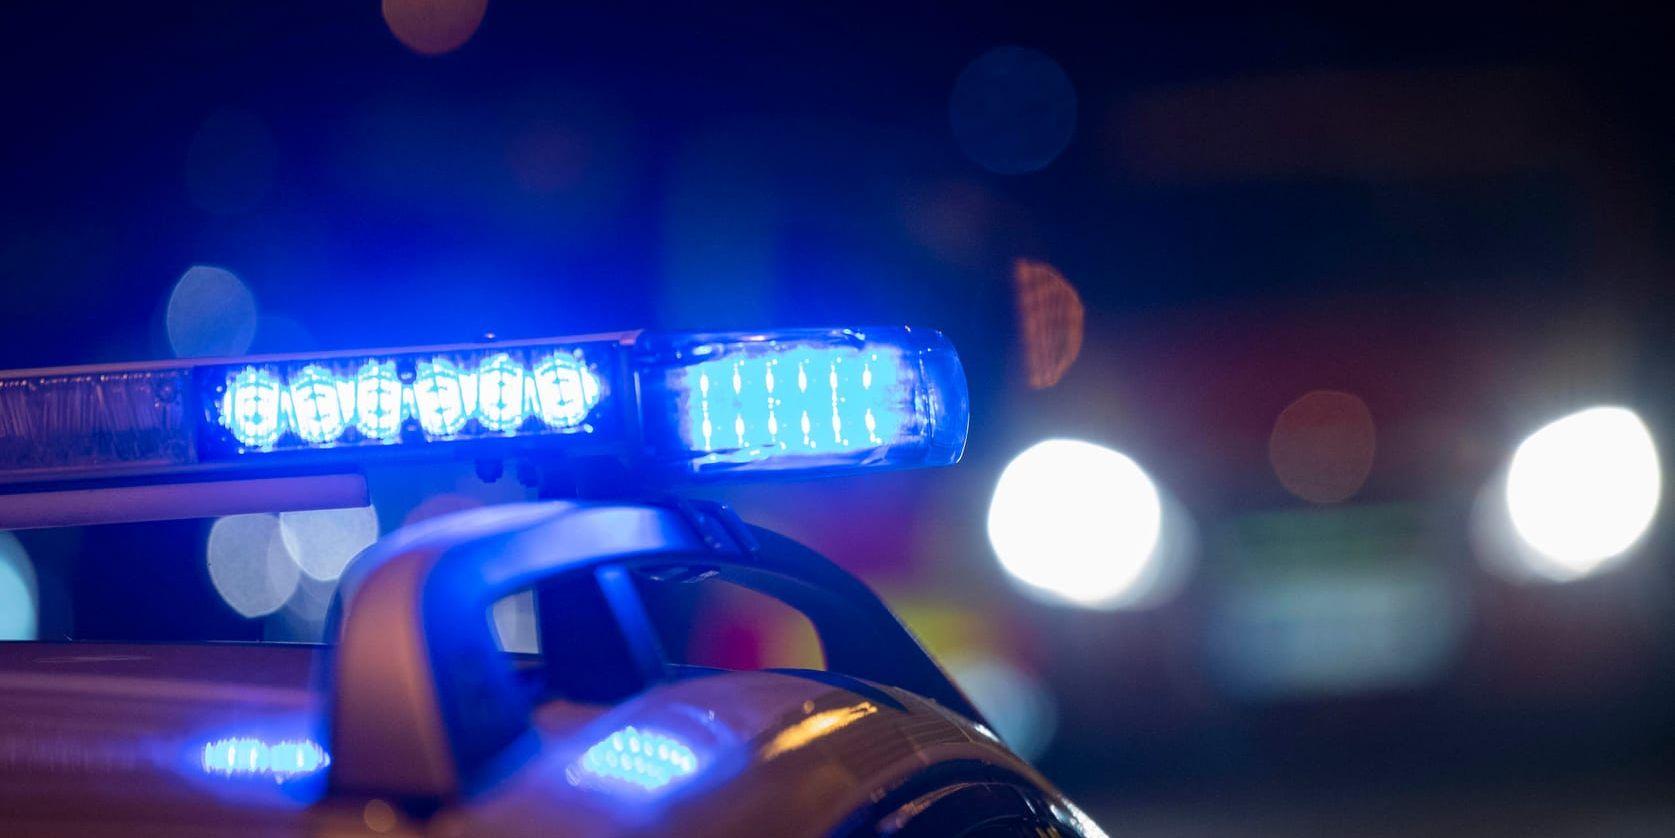 En man som sköt fyrverkeri mot ett hotell nära Kungsbacka en decembernatt åtalas för att ha vållat skador för 20 miljoner kronor. Arkivbild.